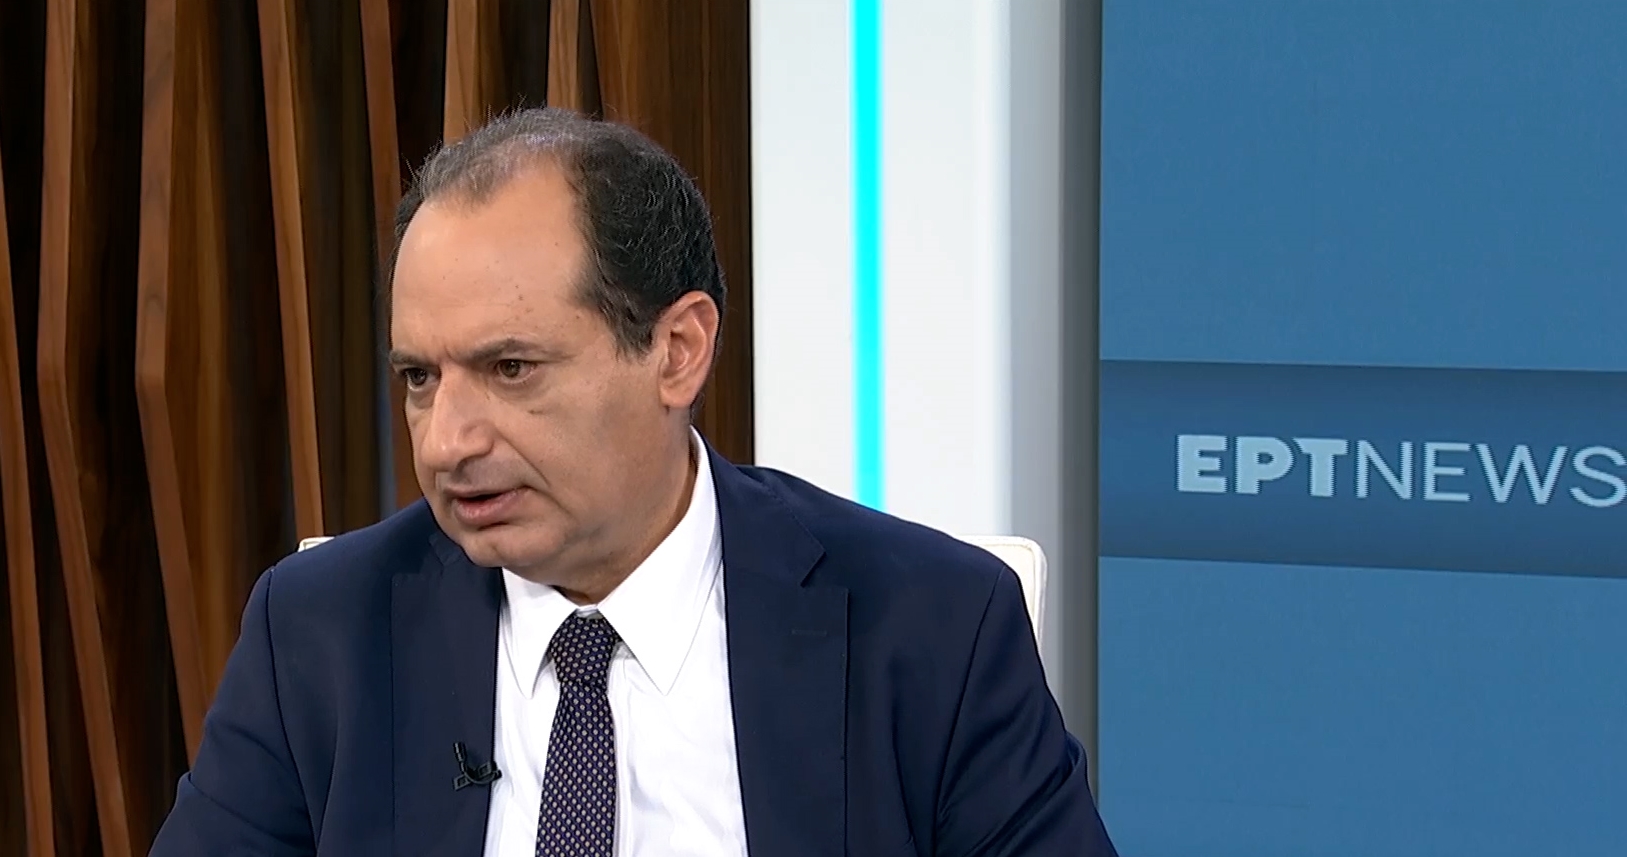 Χ. Σπίρτζης: Αν ΣΥΡΙΖΑ και ΠΑΣΟΚ δεν αναλάβουν πρωτοβουλίες θα υπάρξουν πρωτοβουλίες από τη βάση που θα υπερβούν τα δύο κόμματα